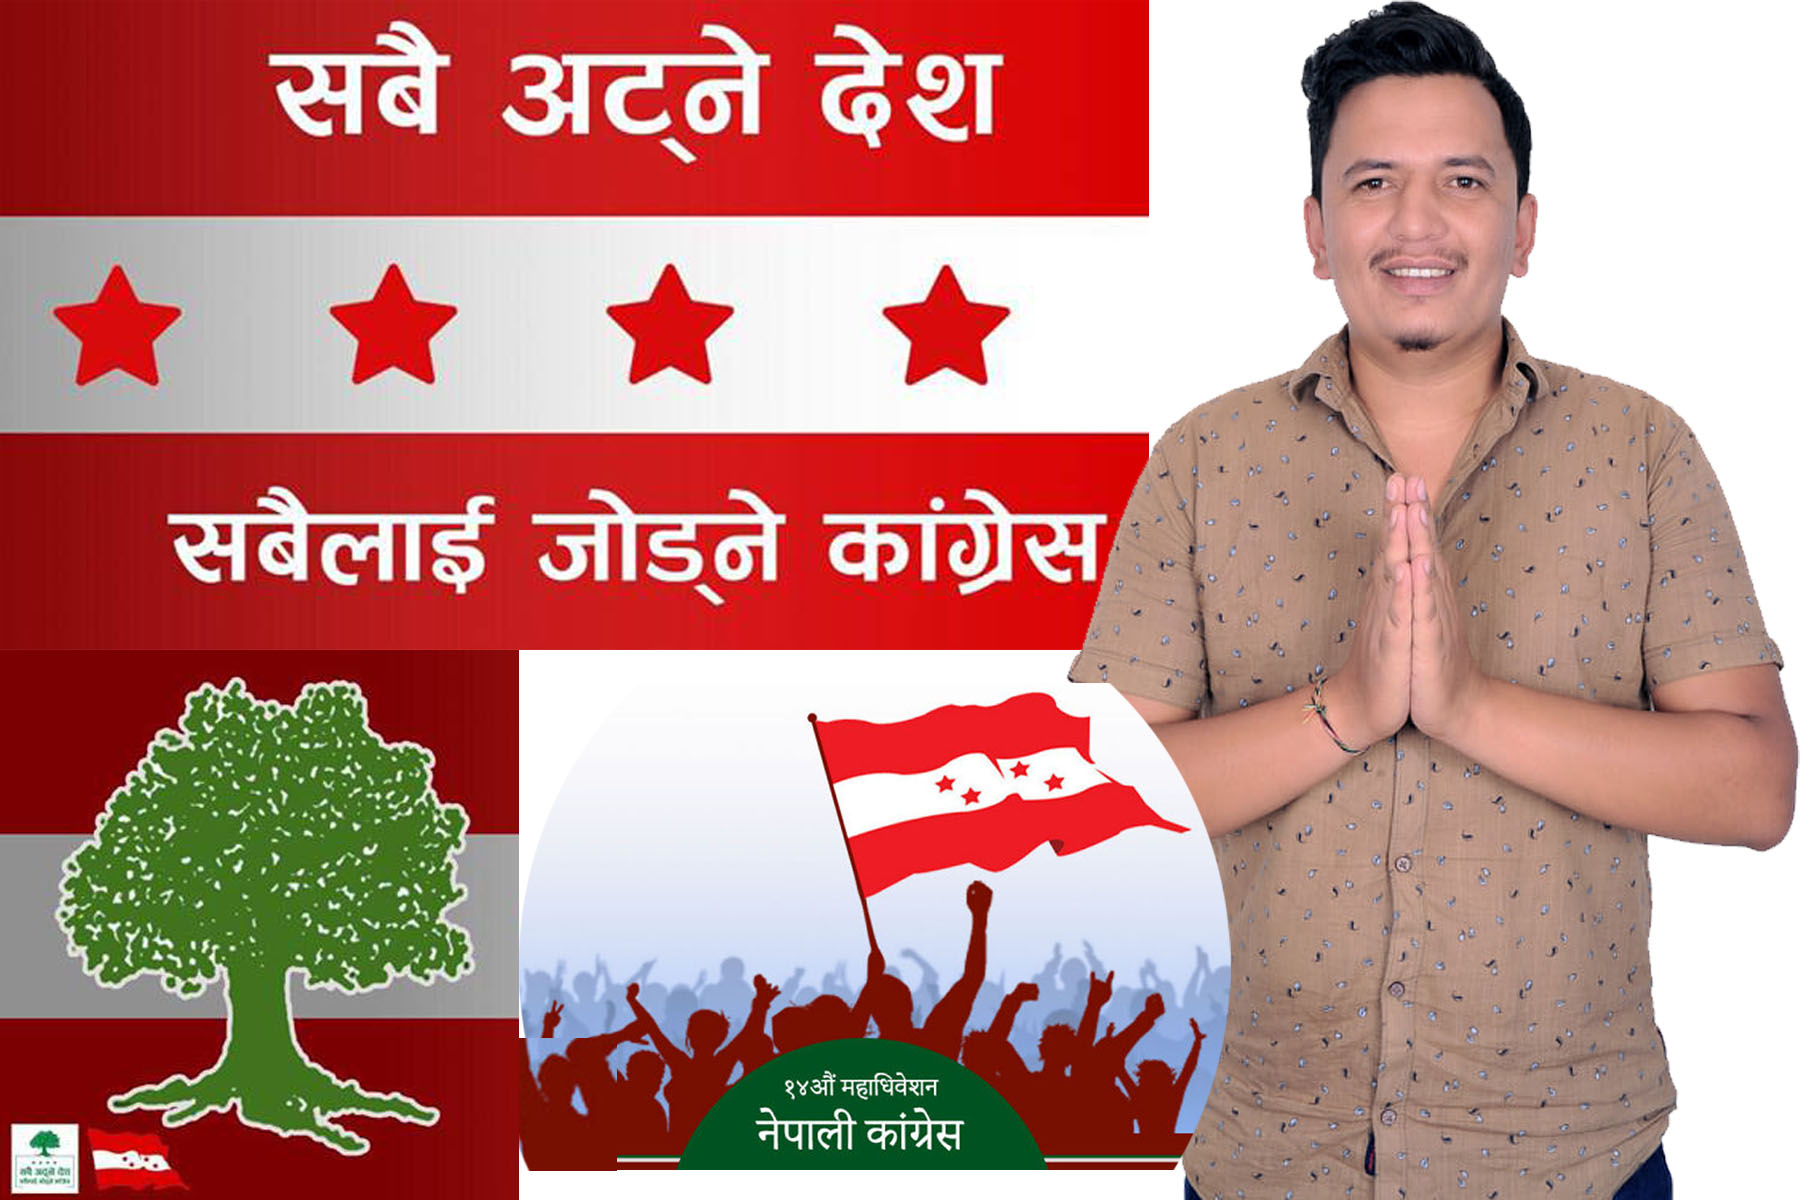 युवा नेता सुशील कुवँरको नेपाली काँग्रेस अछाम  प्रदेश  प्रतिनिधि पदका लागि  उम्मेदवारी घोषणा